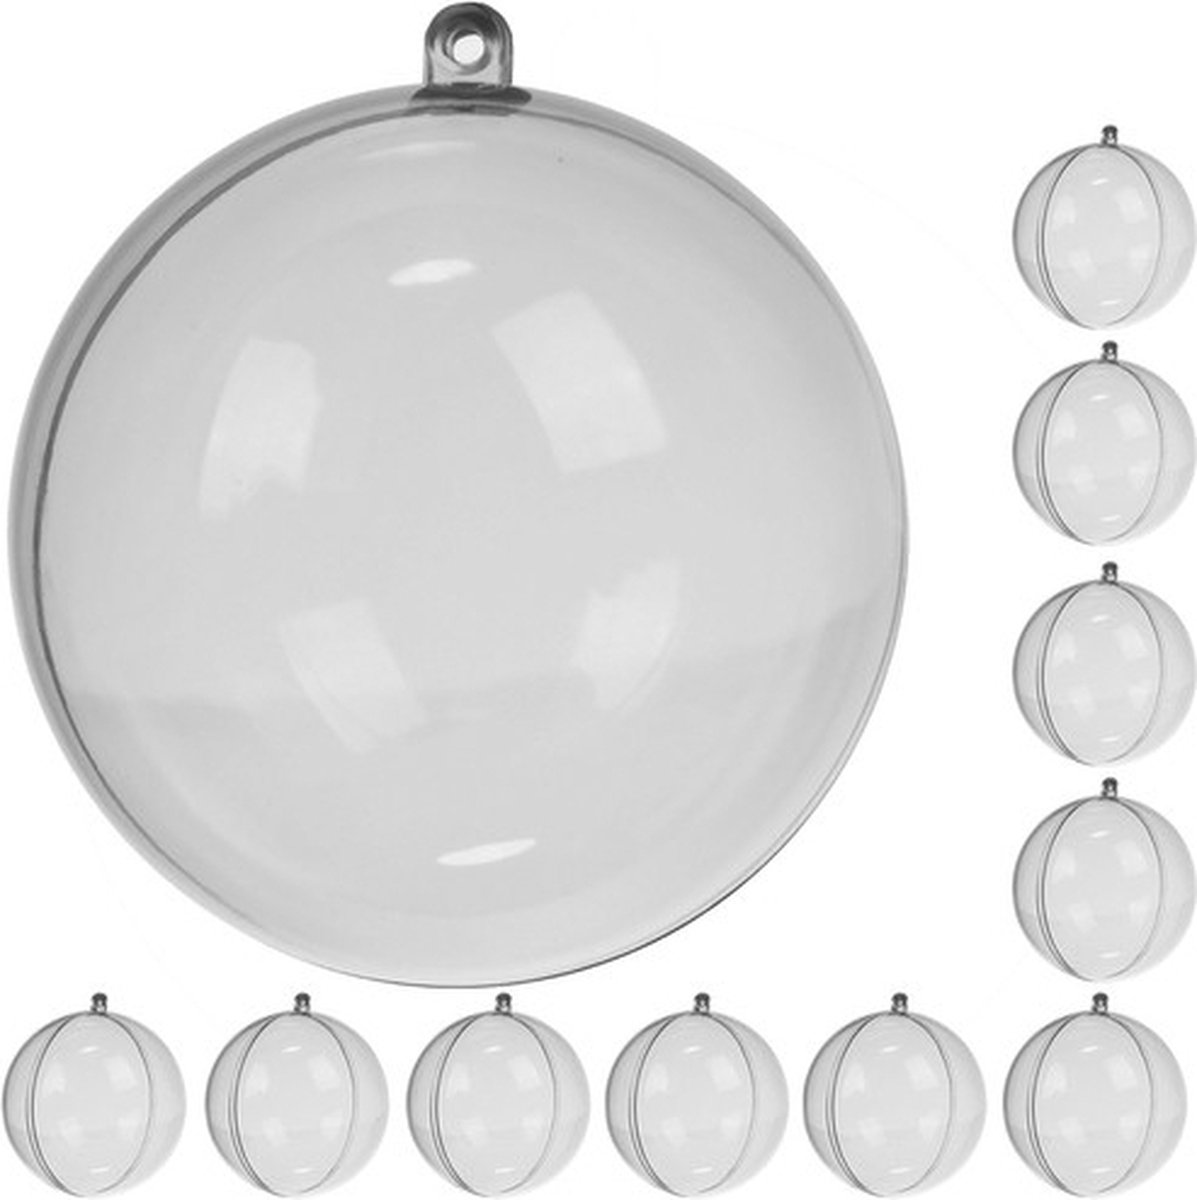 MOZY - 10 x Transparante Kerstballen - 12 cm - Vulbaar - Knutselen - Kerstversiering - Hobby - Kerstdecoratie - Kerstbal - Kerstboomversiering - DIY